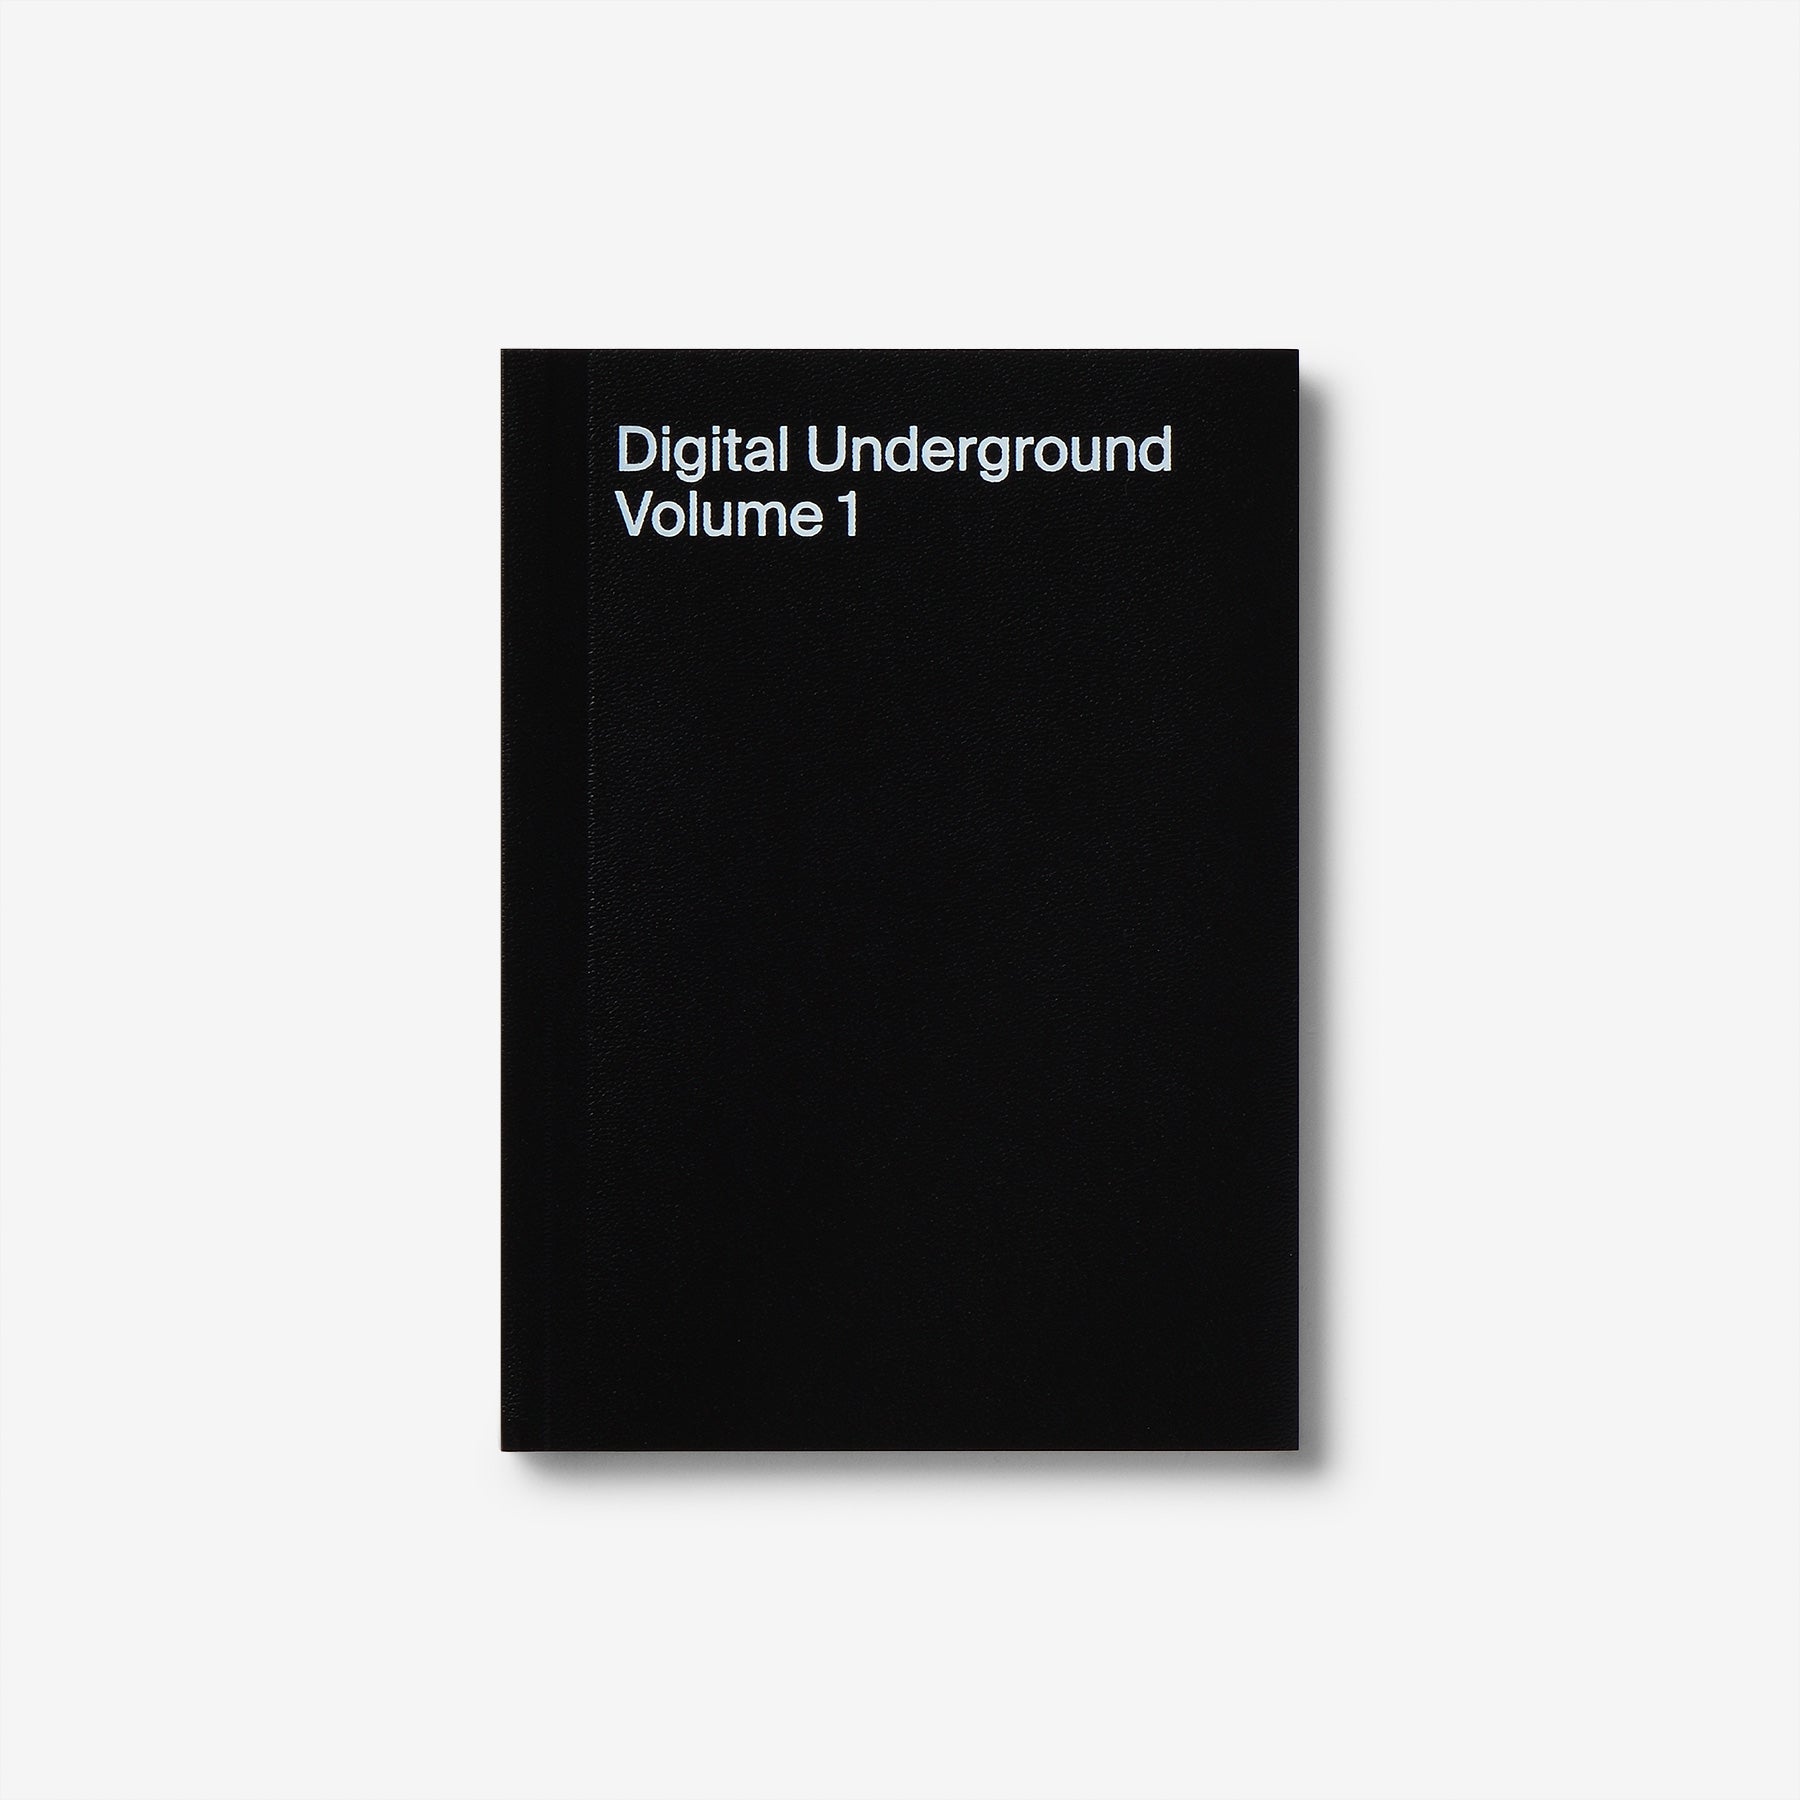 Digital Underground Volume 1